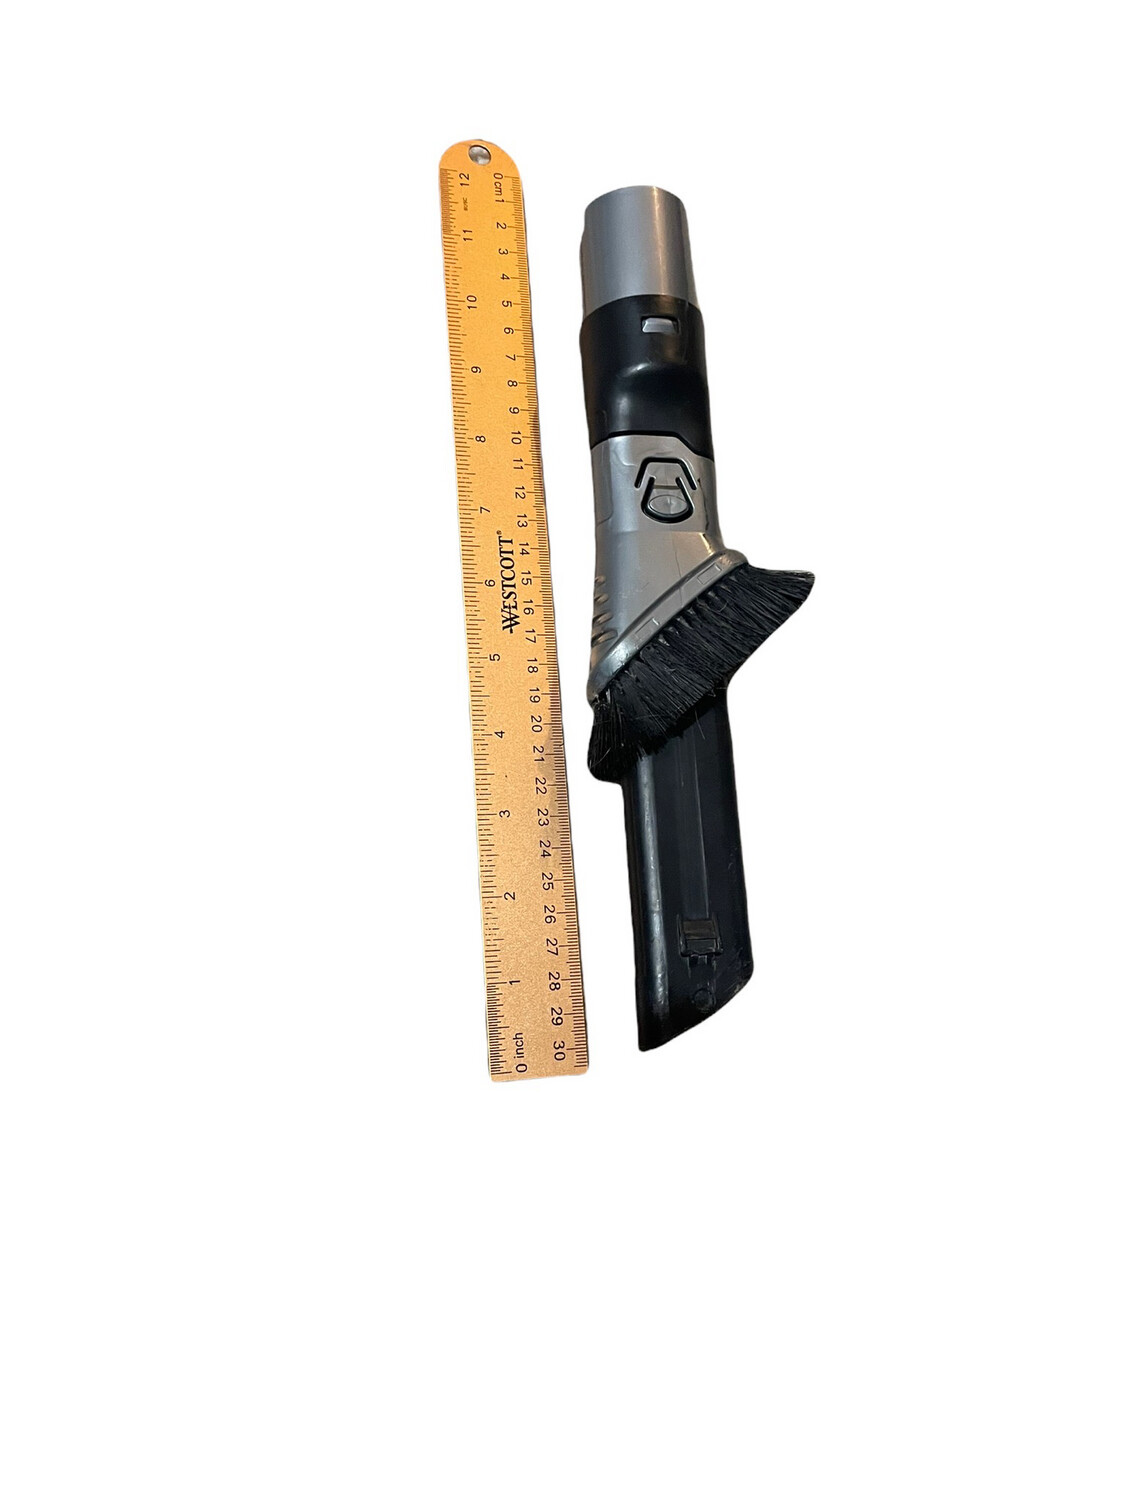 Shark Vacuum Duster tool brush model 189fli680 ( Preowned)